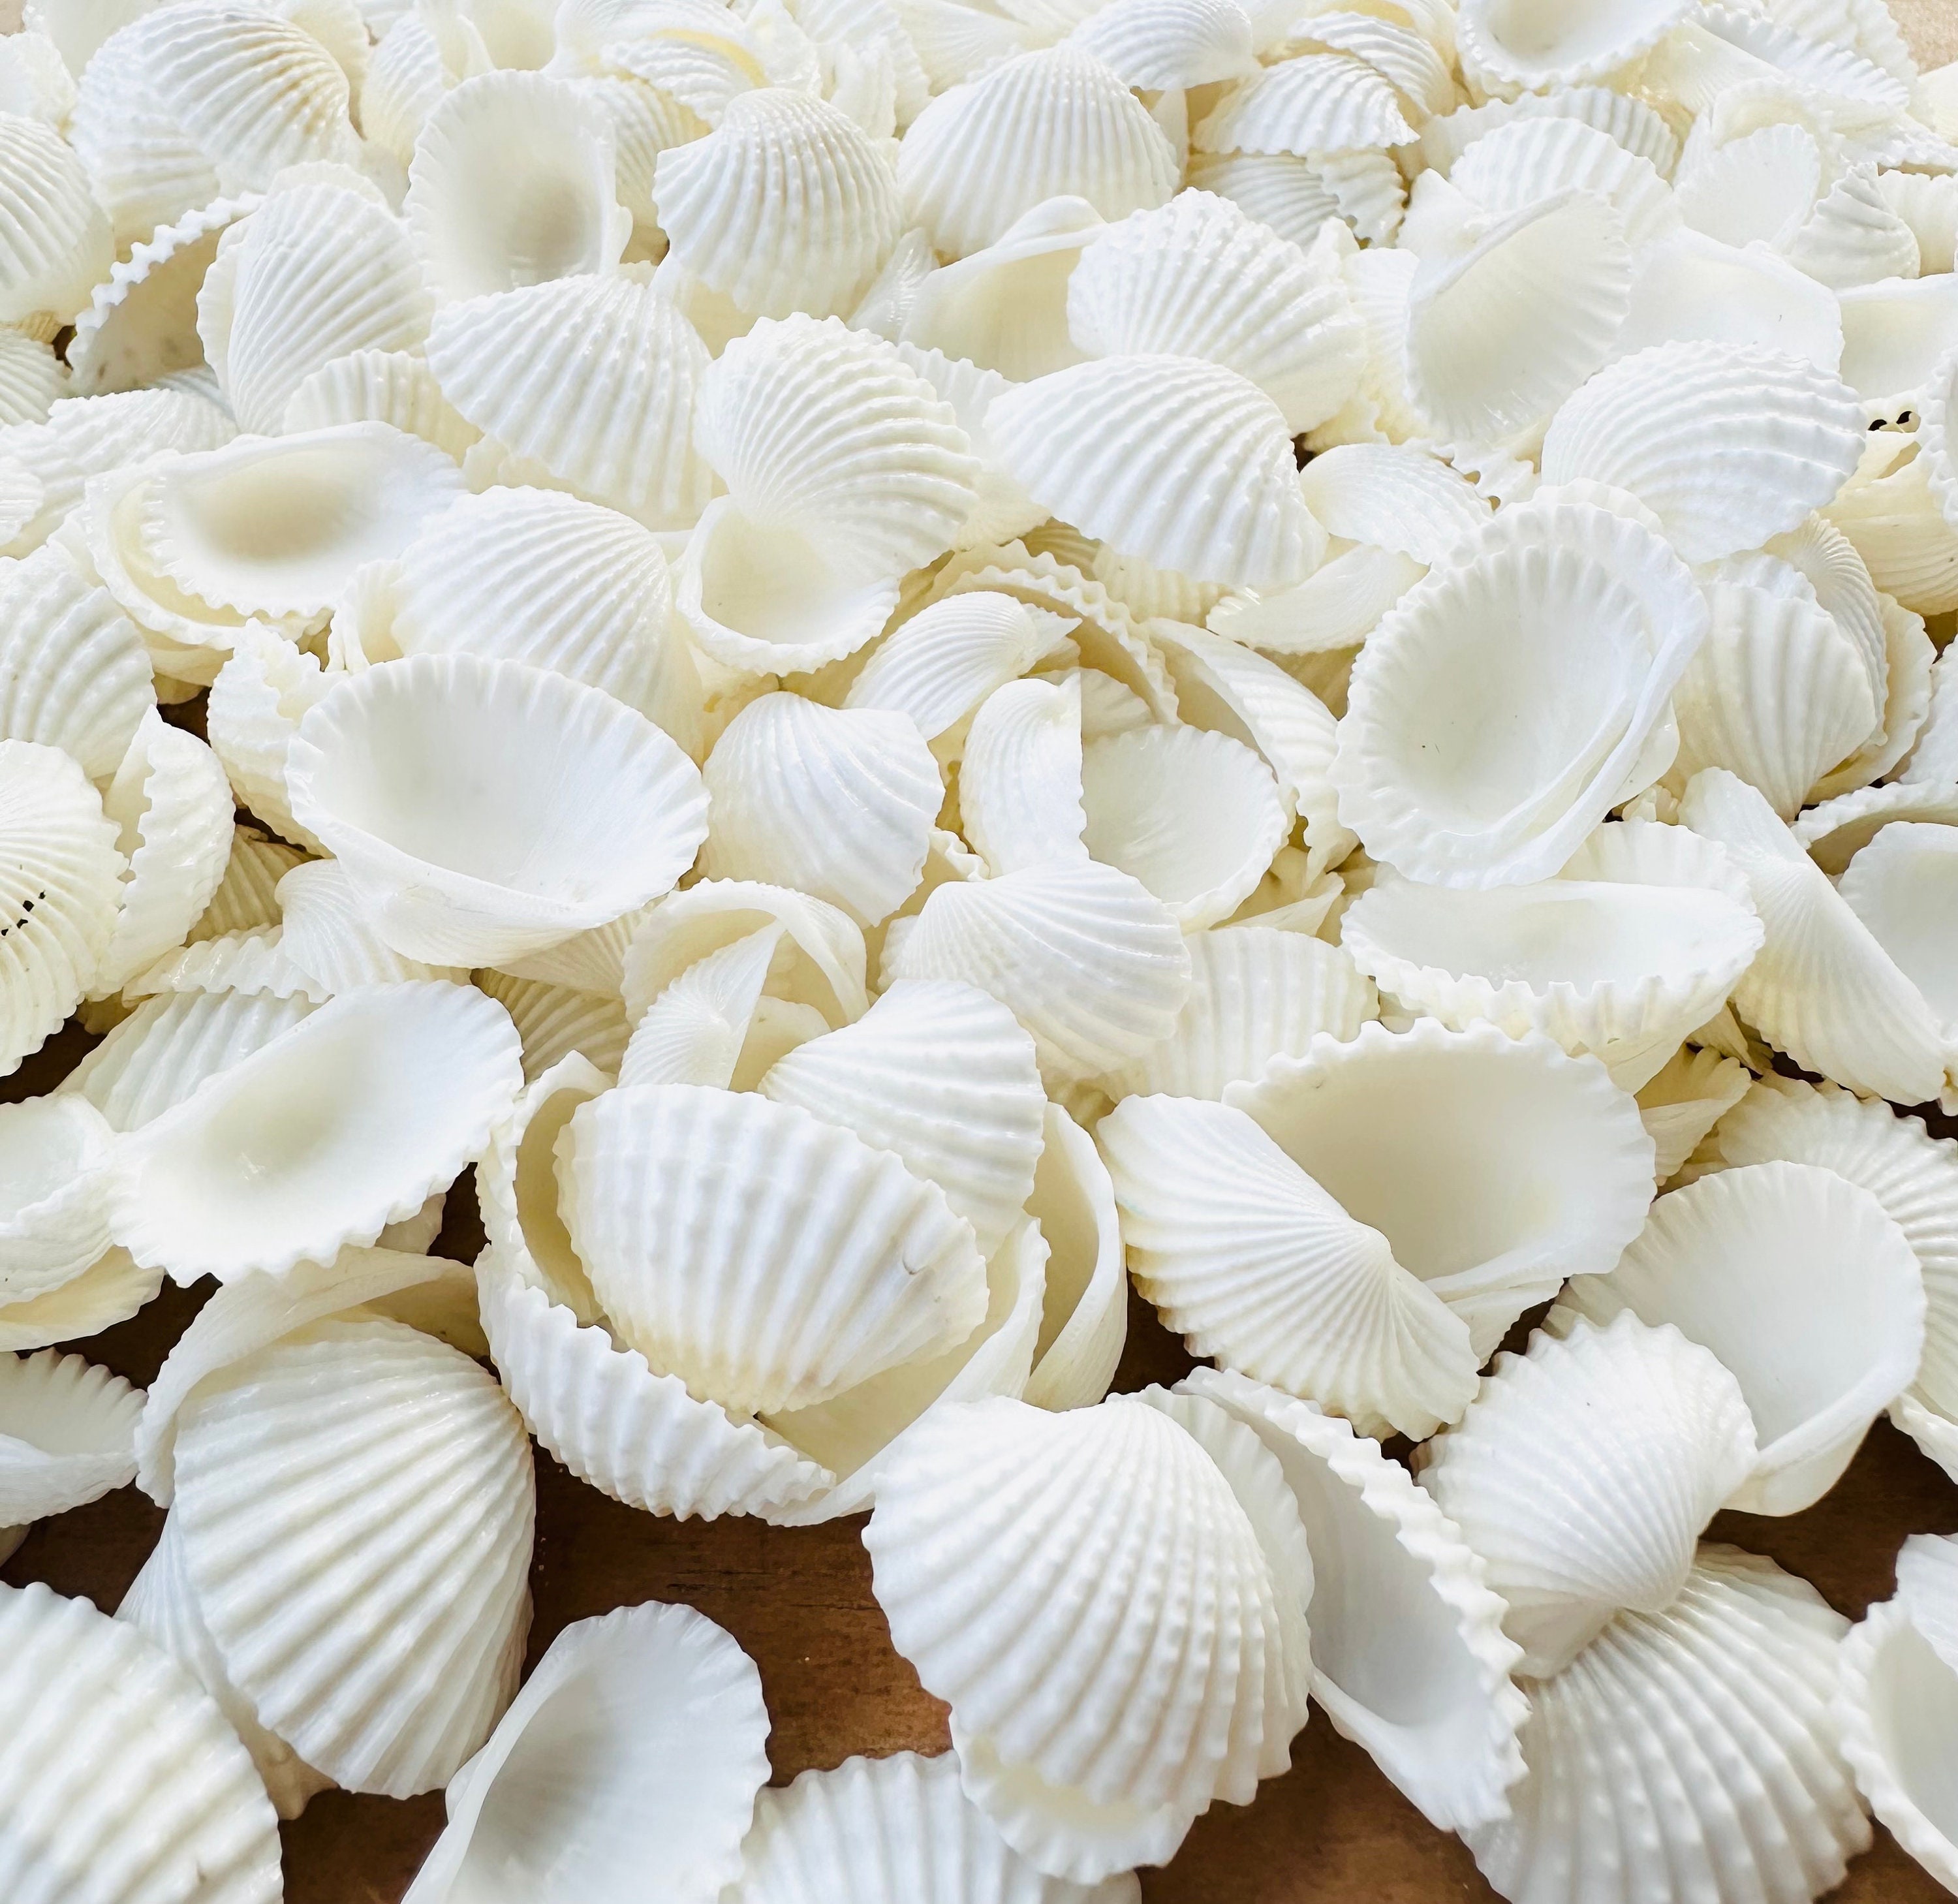 Umbonium Mix Seashells-small Sea Shells-botton Top Shells-shell Vase  Fillers-crafting Shells-natural Sea Shells 